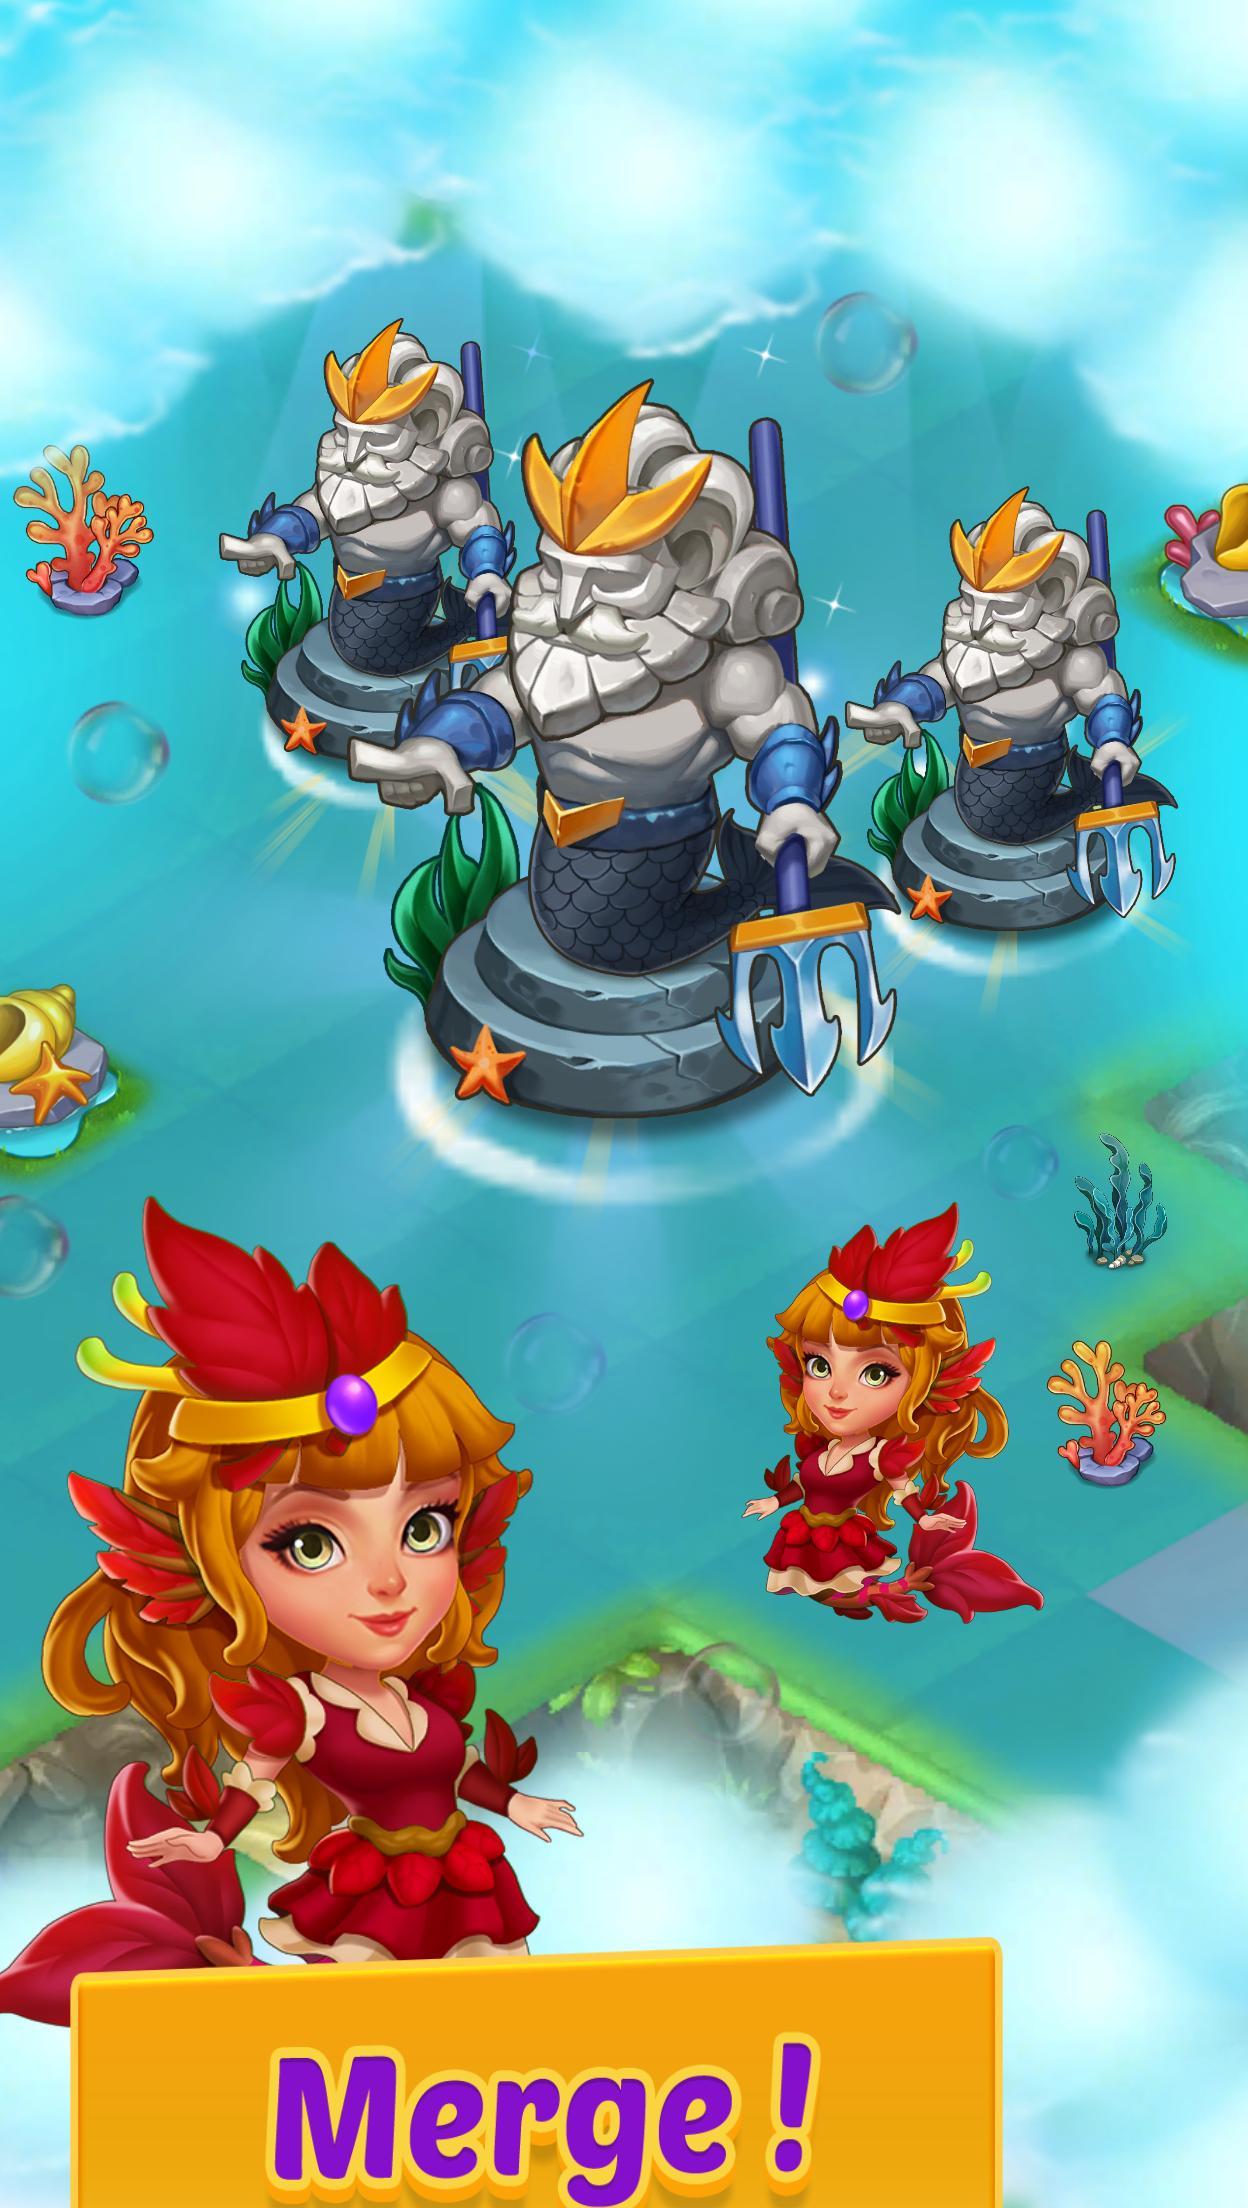 Screenshot 1 of Pagsamahin ang Mermaids-magic puzzle 3.27.0